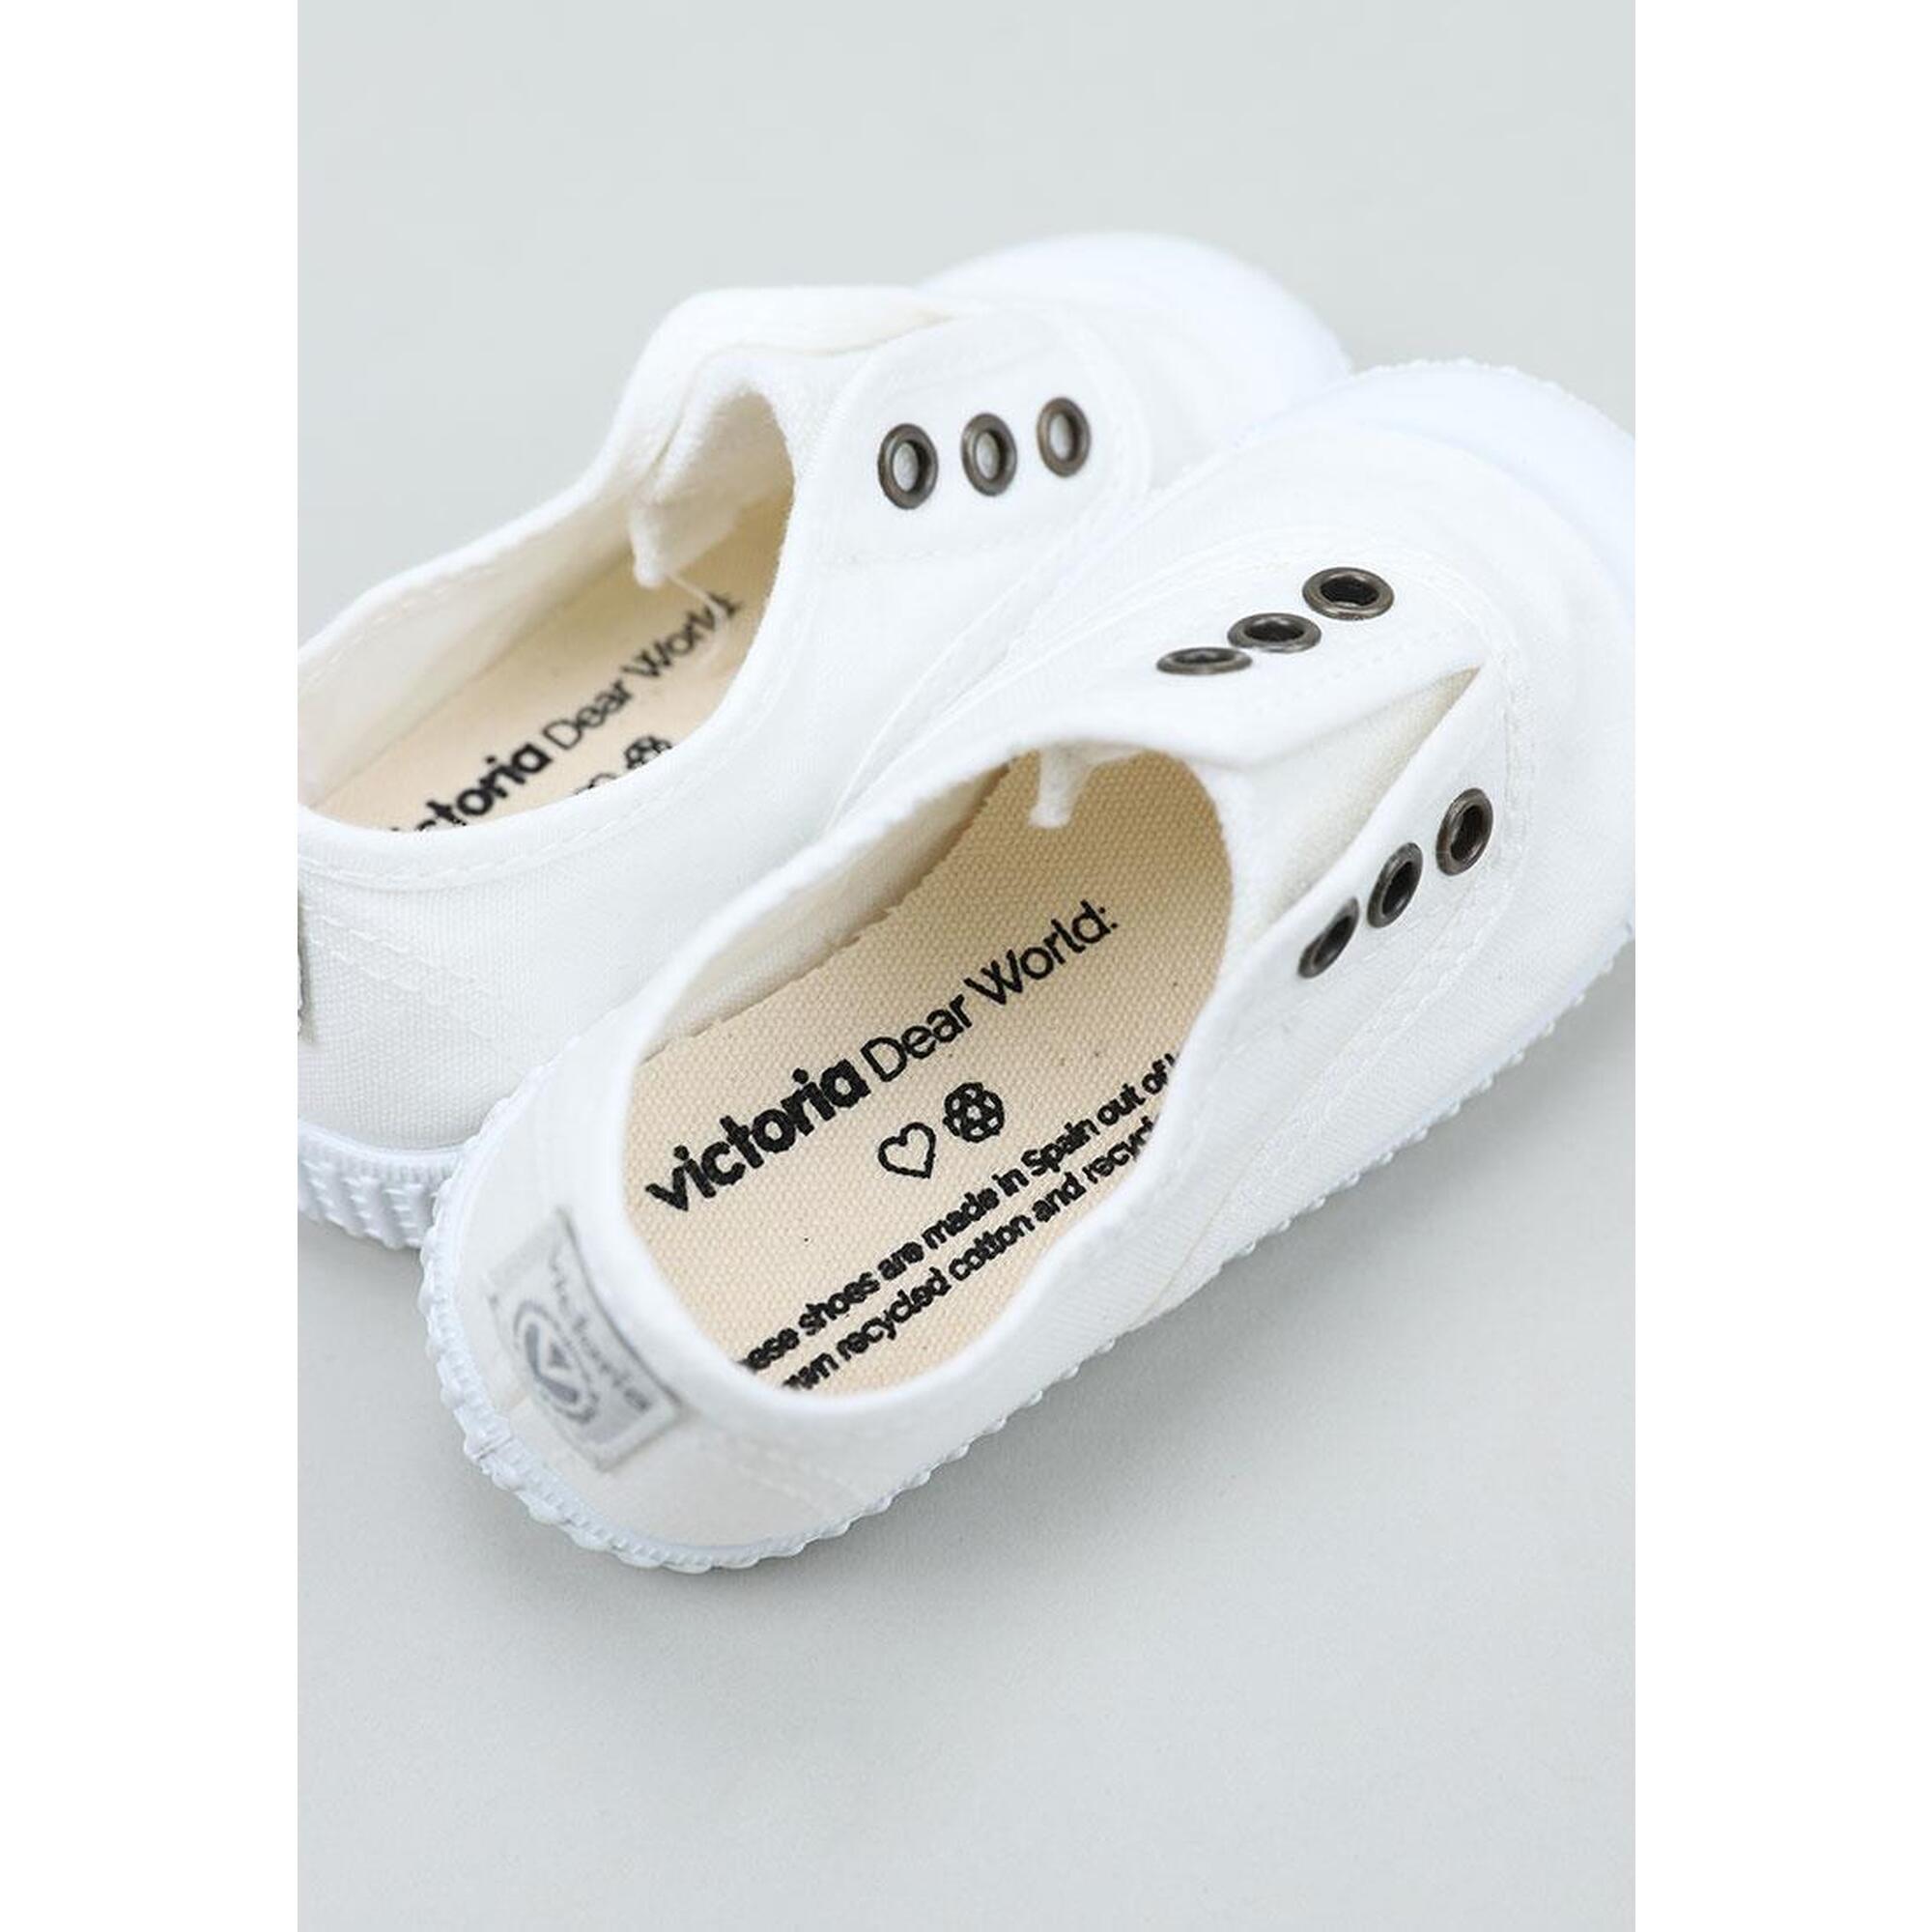 Zapatillas blancas unisex Victoria